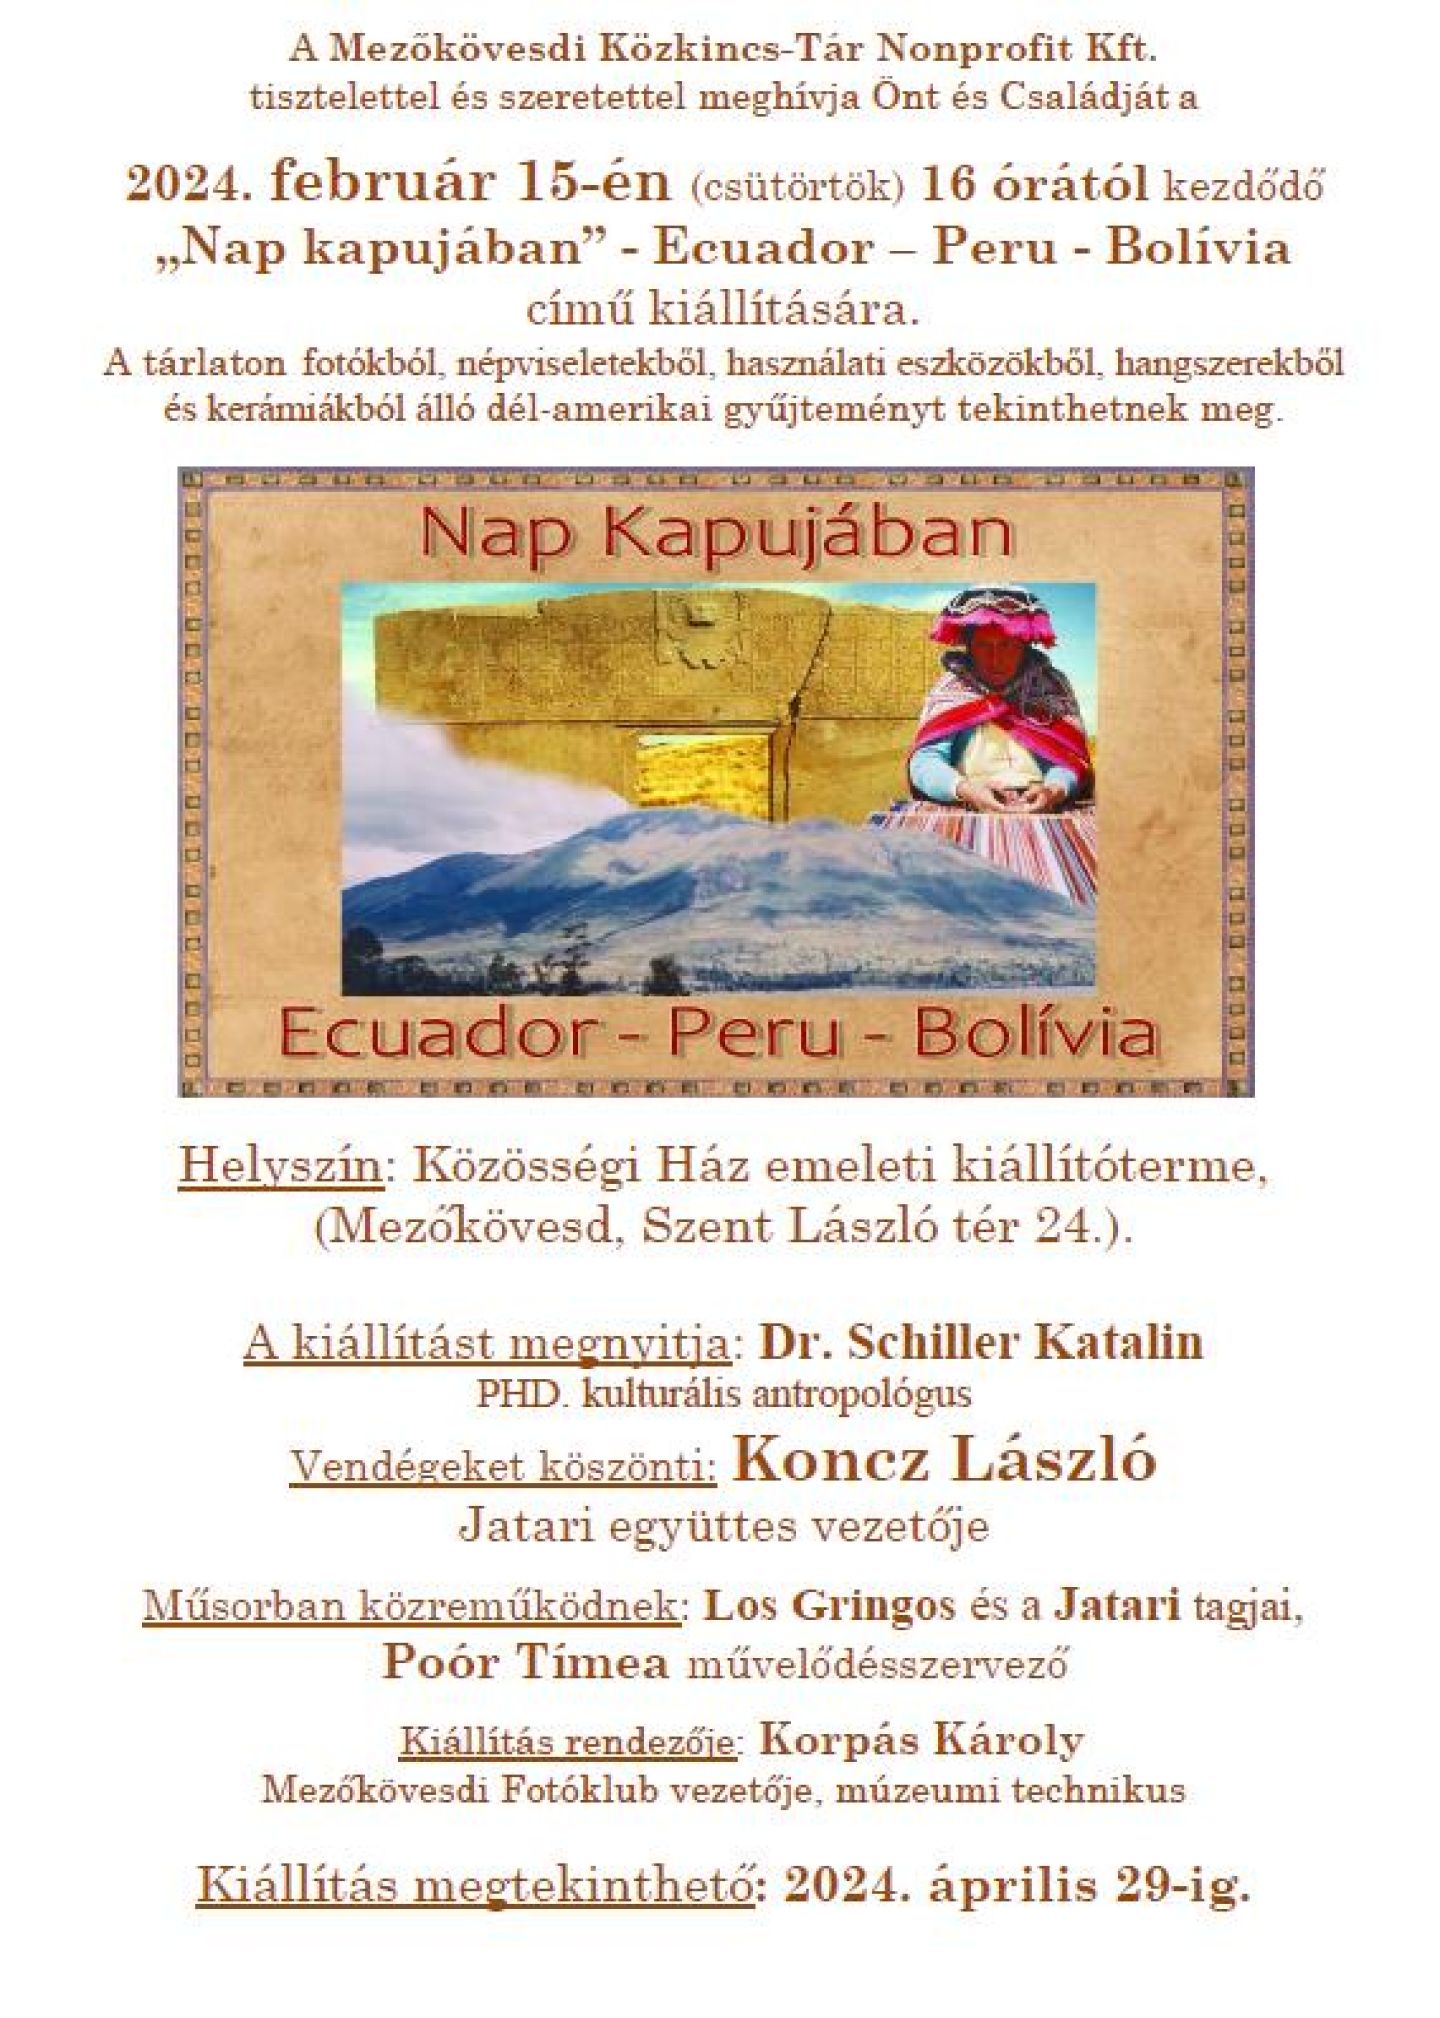 A Mezőkövesdi Közkincs-Tár Nonprofit Kft. tisztelettel és szeretettel meghívja Önt és kedves családját a 2024. február 15-én (csütörtökön) 16 órától kezdődő  Nap kapujában” – Ecuador- Peru-Bolívia  című kiállítására.   A tárlaton fotókból, népviseletekből, használati eszközökből, hangszerekből és kerámiákból álló dél-amerikai gyűjteményt tekinthetnek meg.  Helyszín: Közösségi Ház emeleti kiállítóterme (Mezőkövesd, Szent László tér 24.)  A kiállítást megnyitja: dr. S Schiller Katalin PHD kulturális antropológus Vendégeket köszönti: Koncz László a Jatari Együttes vezetője Műsorban közreműködnek: Los Gringos és a Jatari tagjai, Poór Tímea művelődésszervező Kiállítás rendezője: Korpás Károly Mezőkövesdi Fotóklub vezetője, múzeumi technikus  Kiállítás megtekinthető: 2024. április 29-ig. 